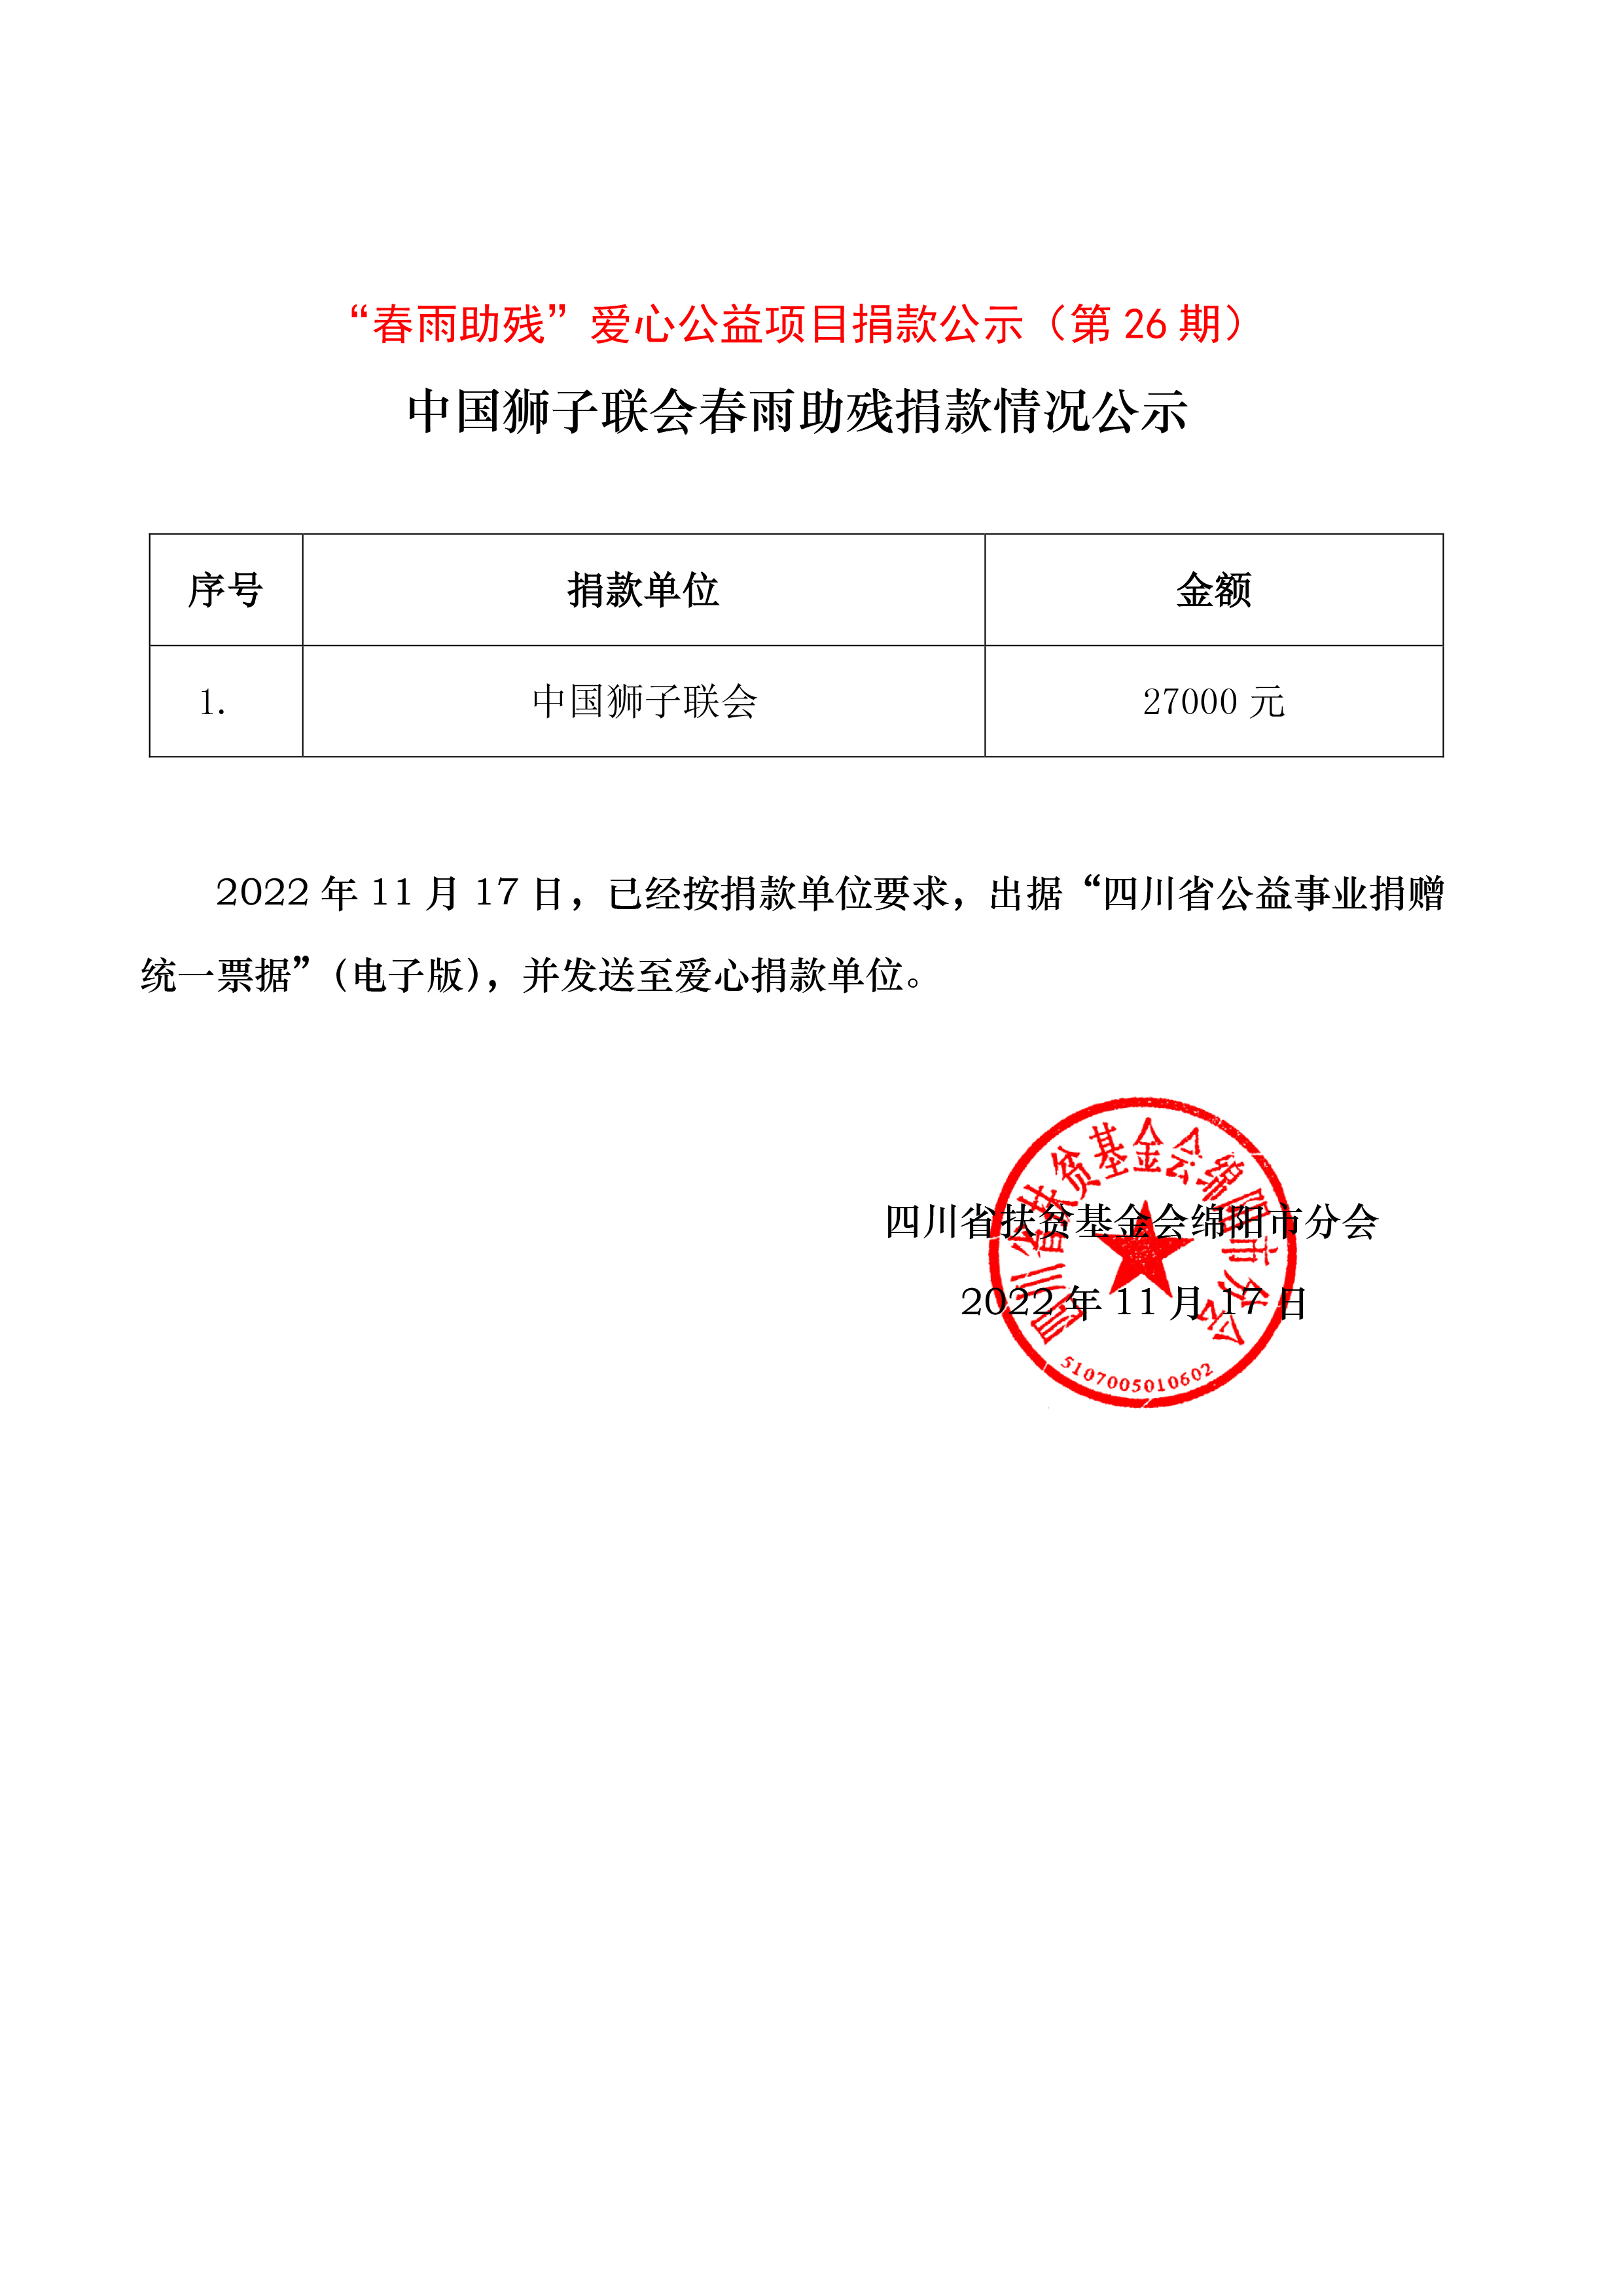 第26期-2022年11月中国狮子联会捐款27000元情况公示.jpg